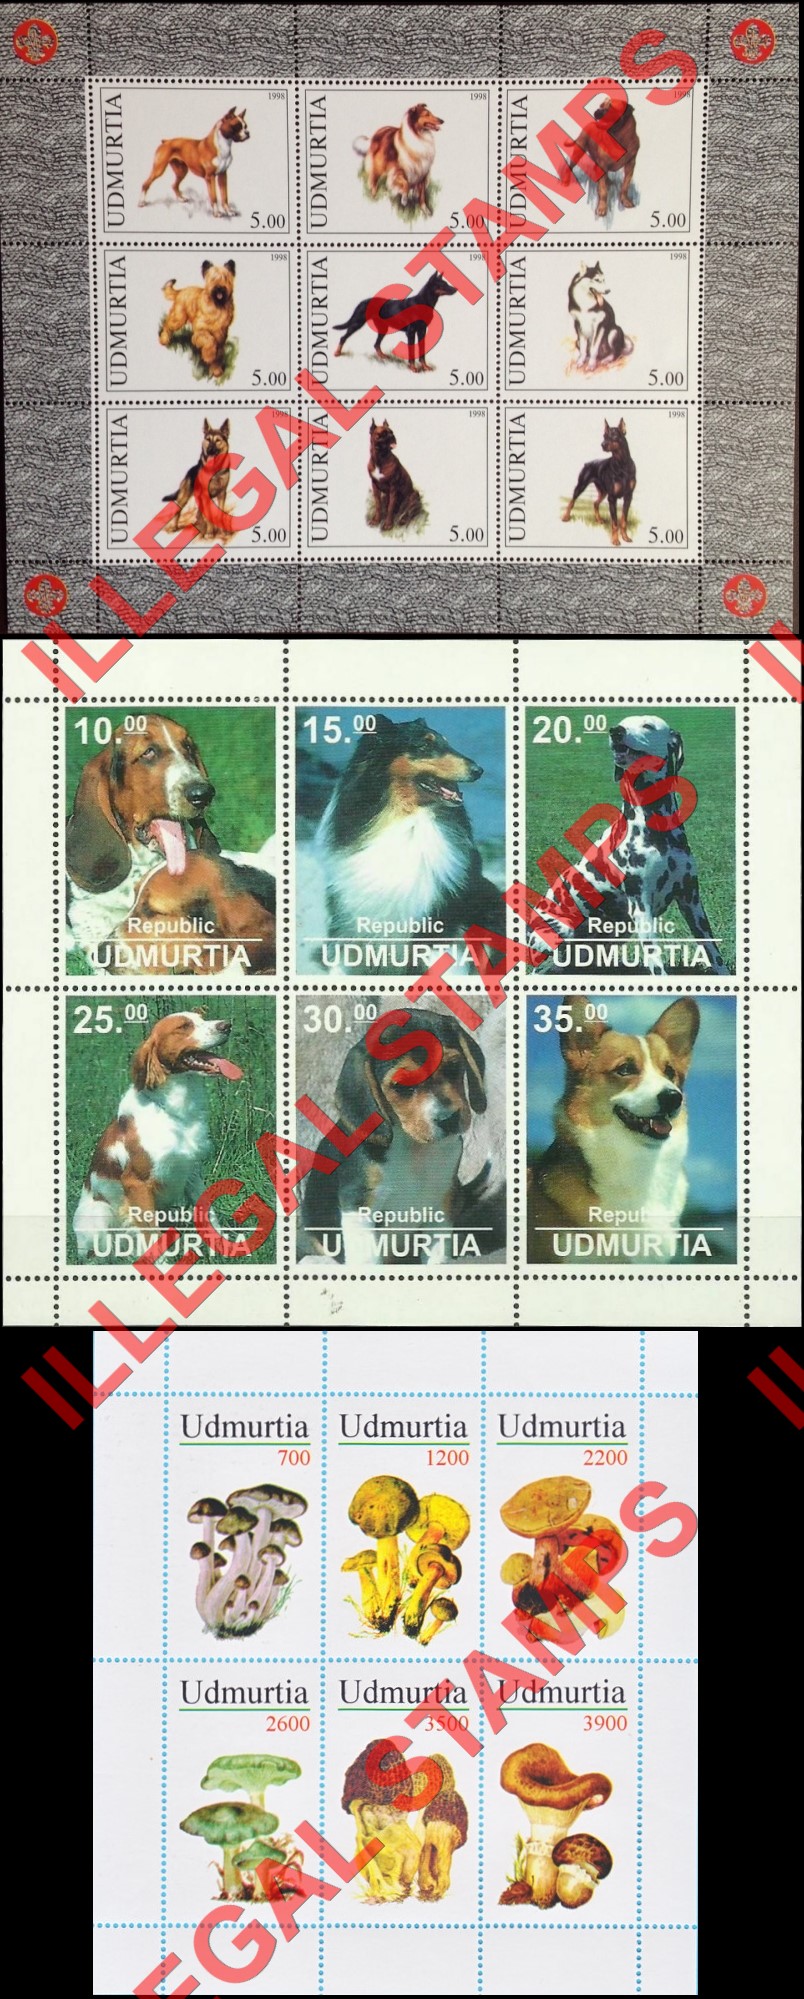 Republic of Udmurtia 1998 Counterfeit Illegal Stamps (Part 2)